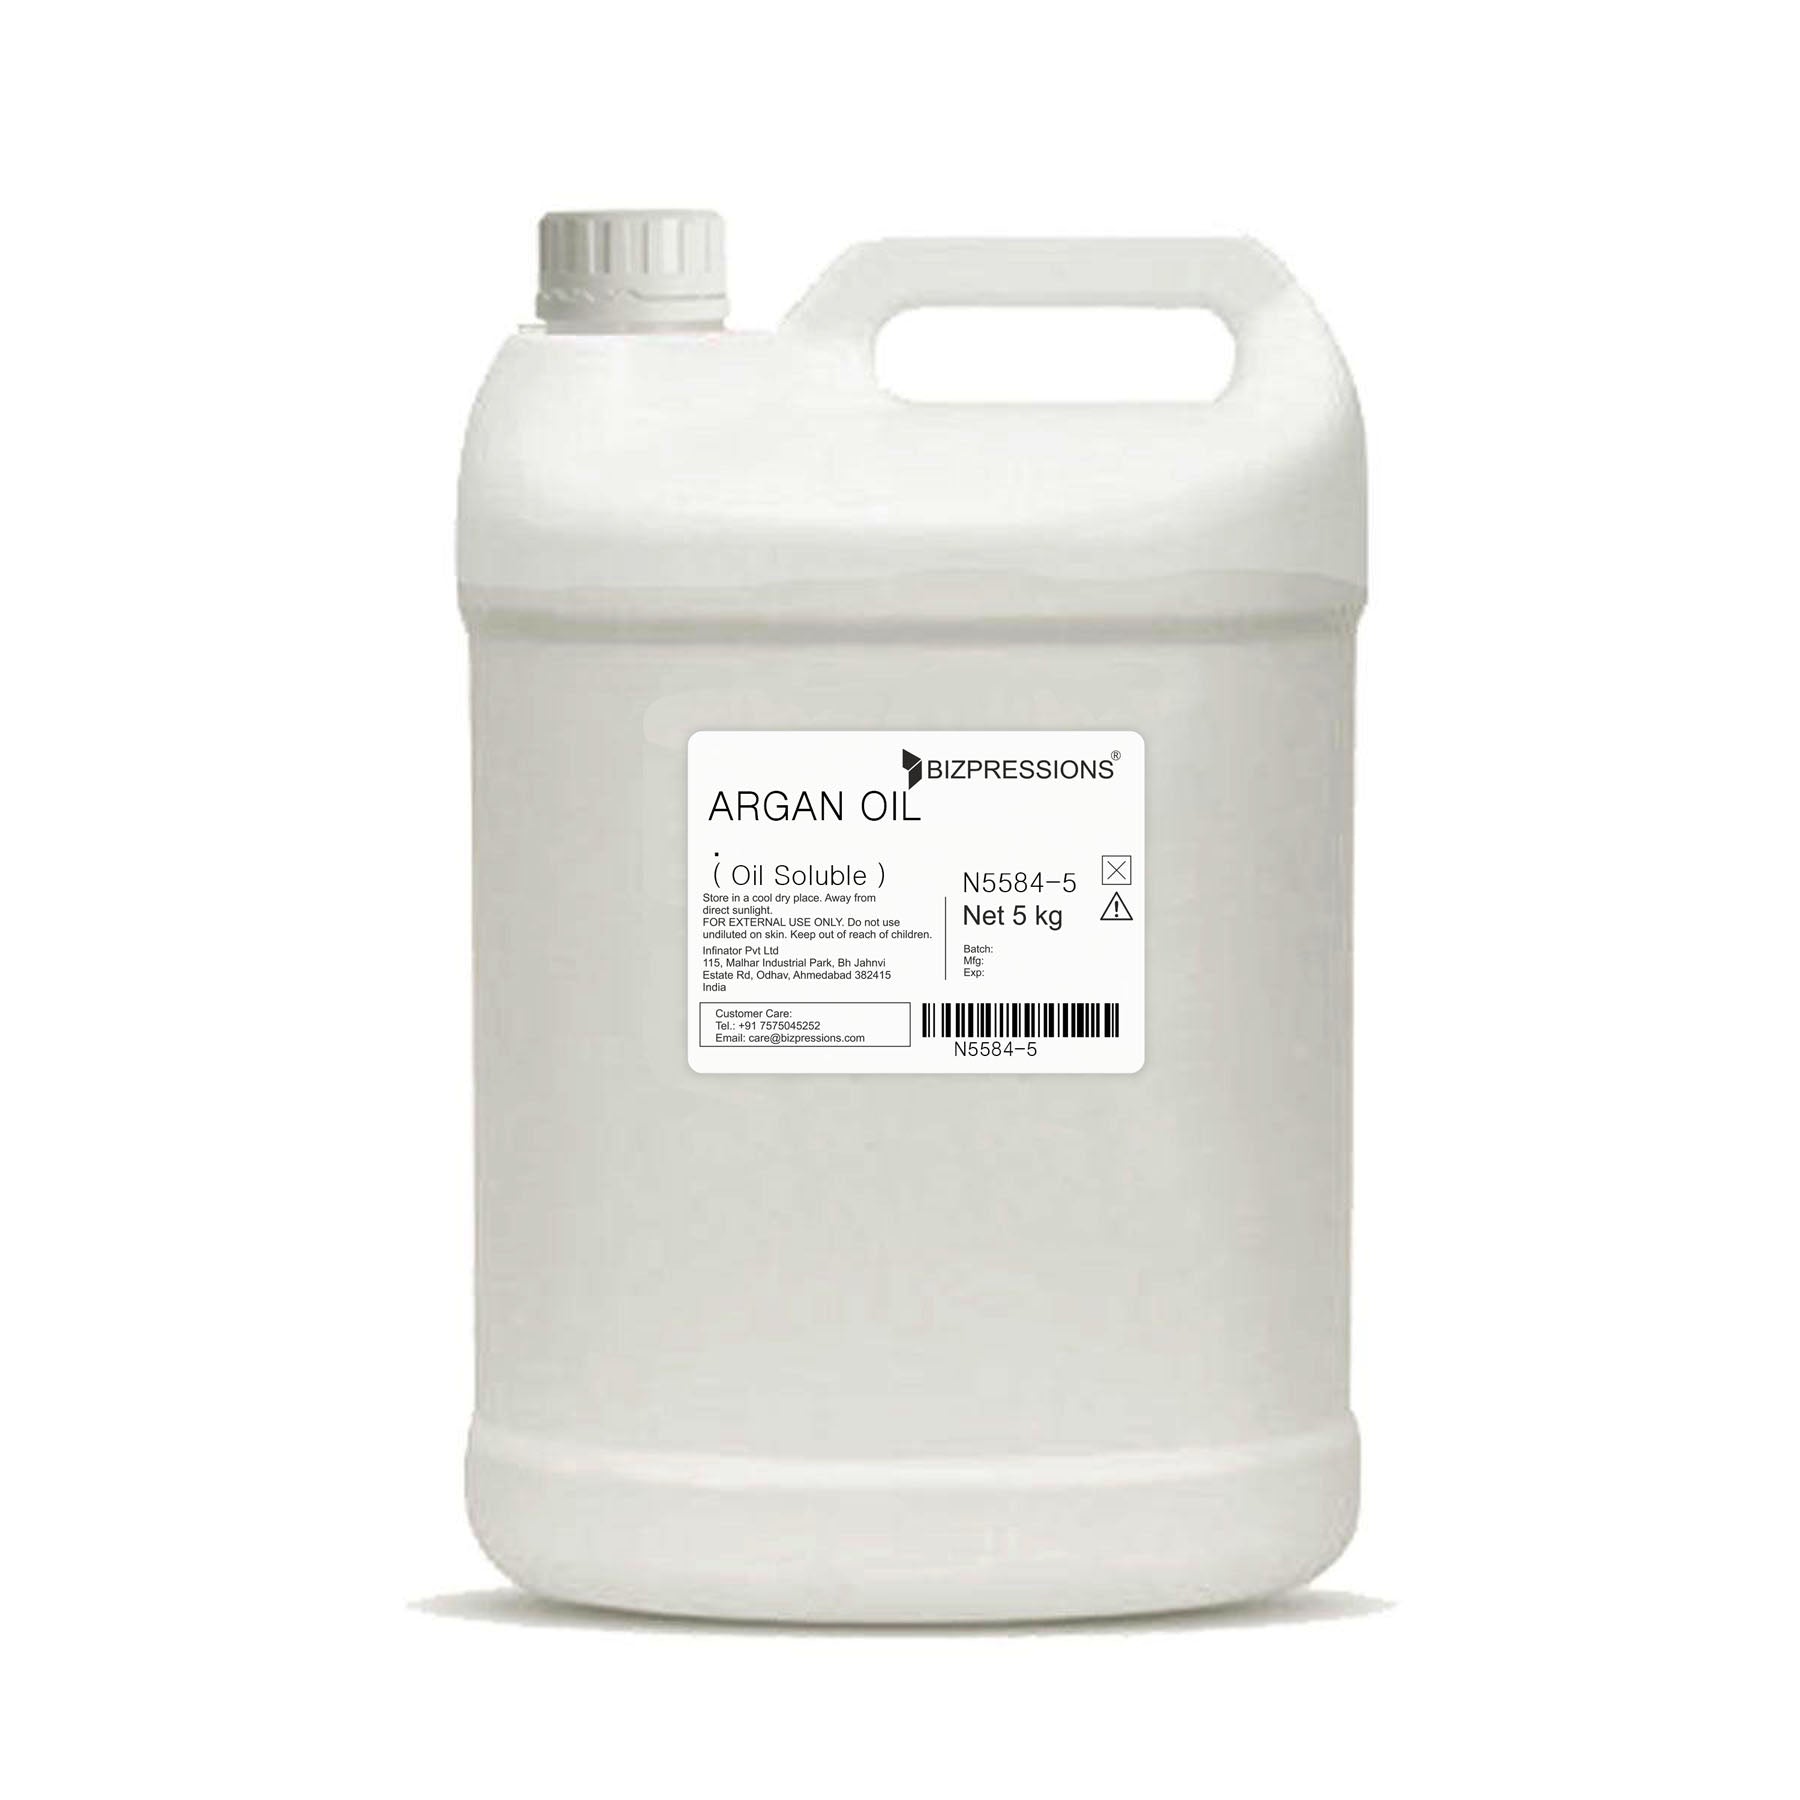 ARGAN OIL - Fragrance ( Oil Soluble ) - 5 kg